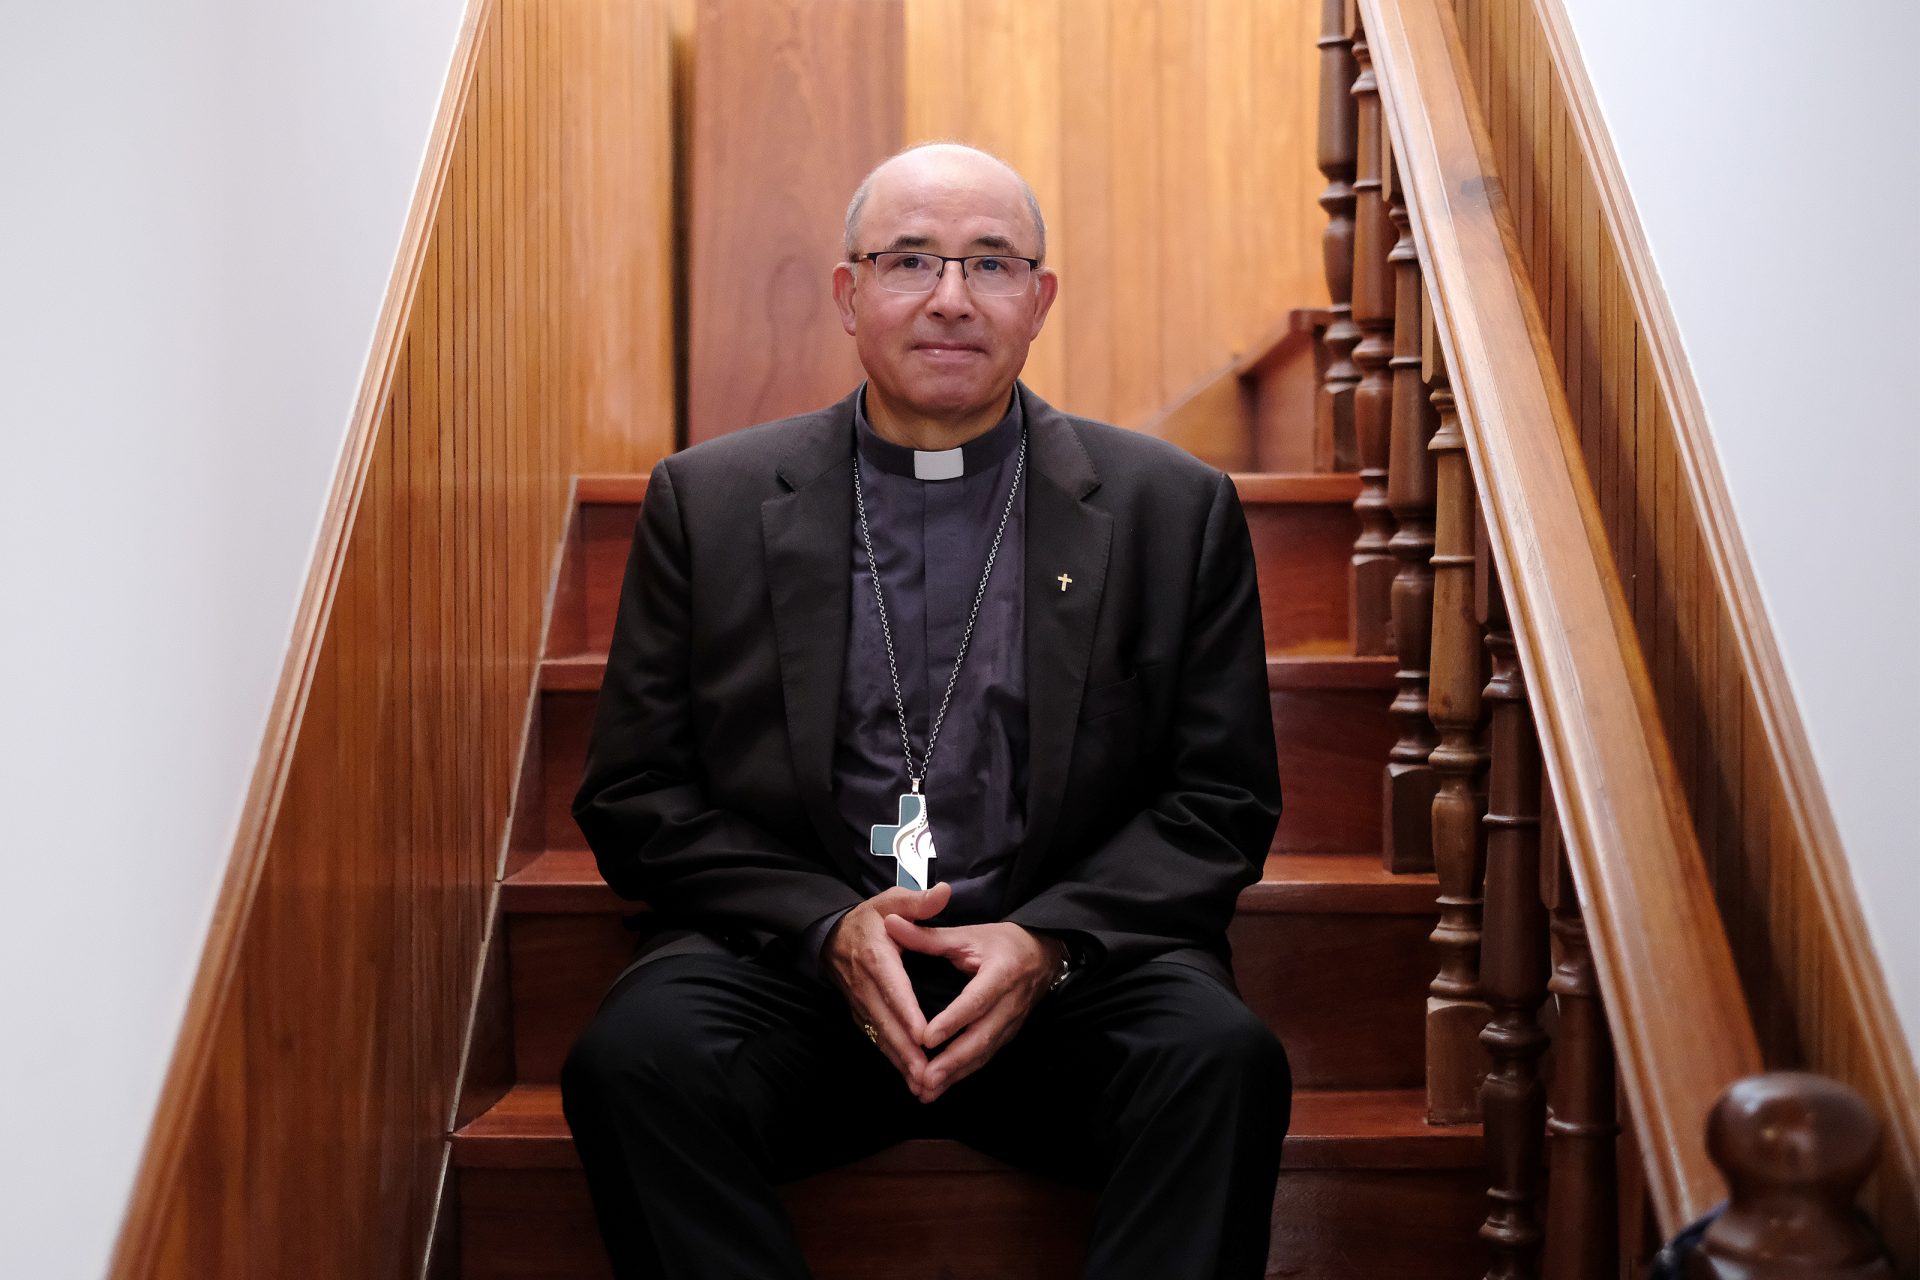 Patriarca Rui Valério: “As contas da JMJ foram exemplares e apontam para um superavit”